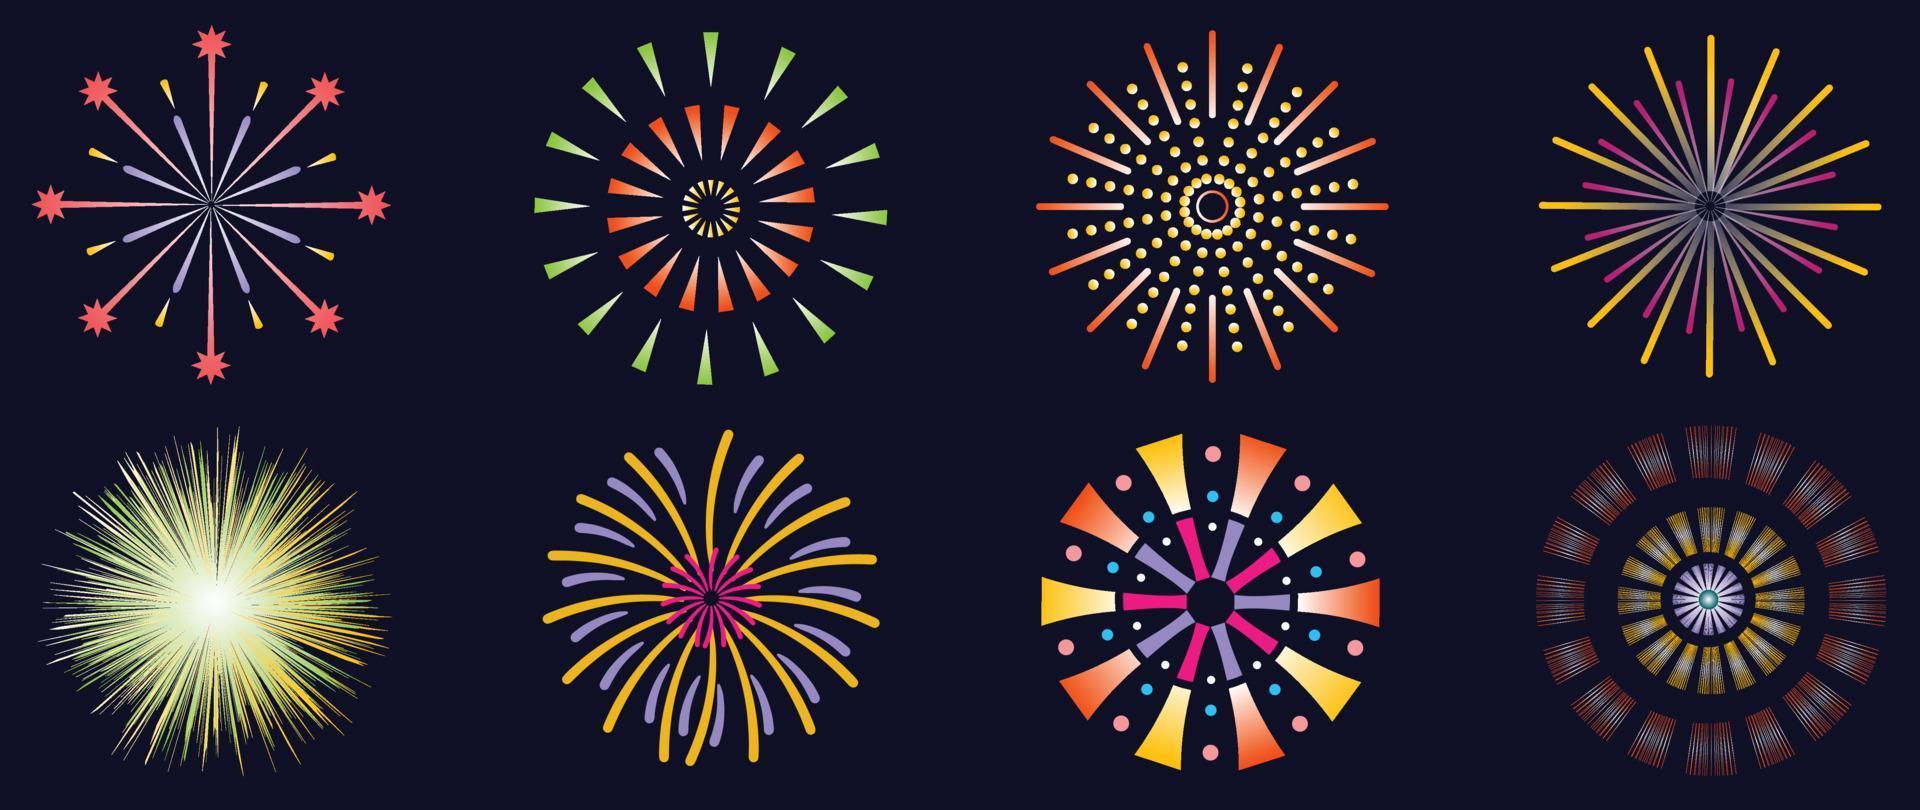 conjunto de ilustração vetorial de fogos de artifício de ano novo. coleção de fogos de artifício coloridos vibrantes de brilho em fundo preto. design de arte adequado para decoração, impressão, pôster, banner, papel de parede, cartão, capa. vetor